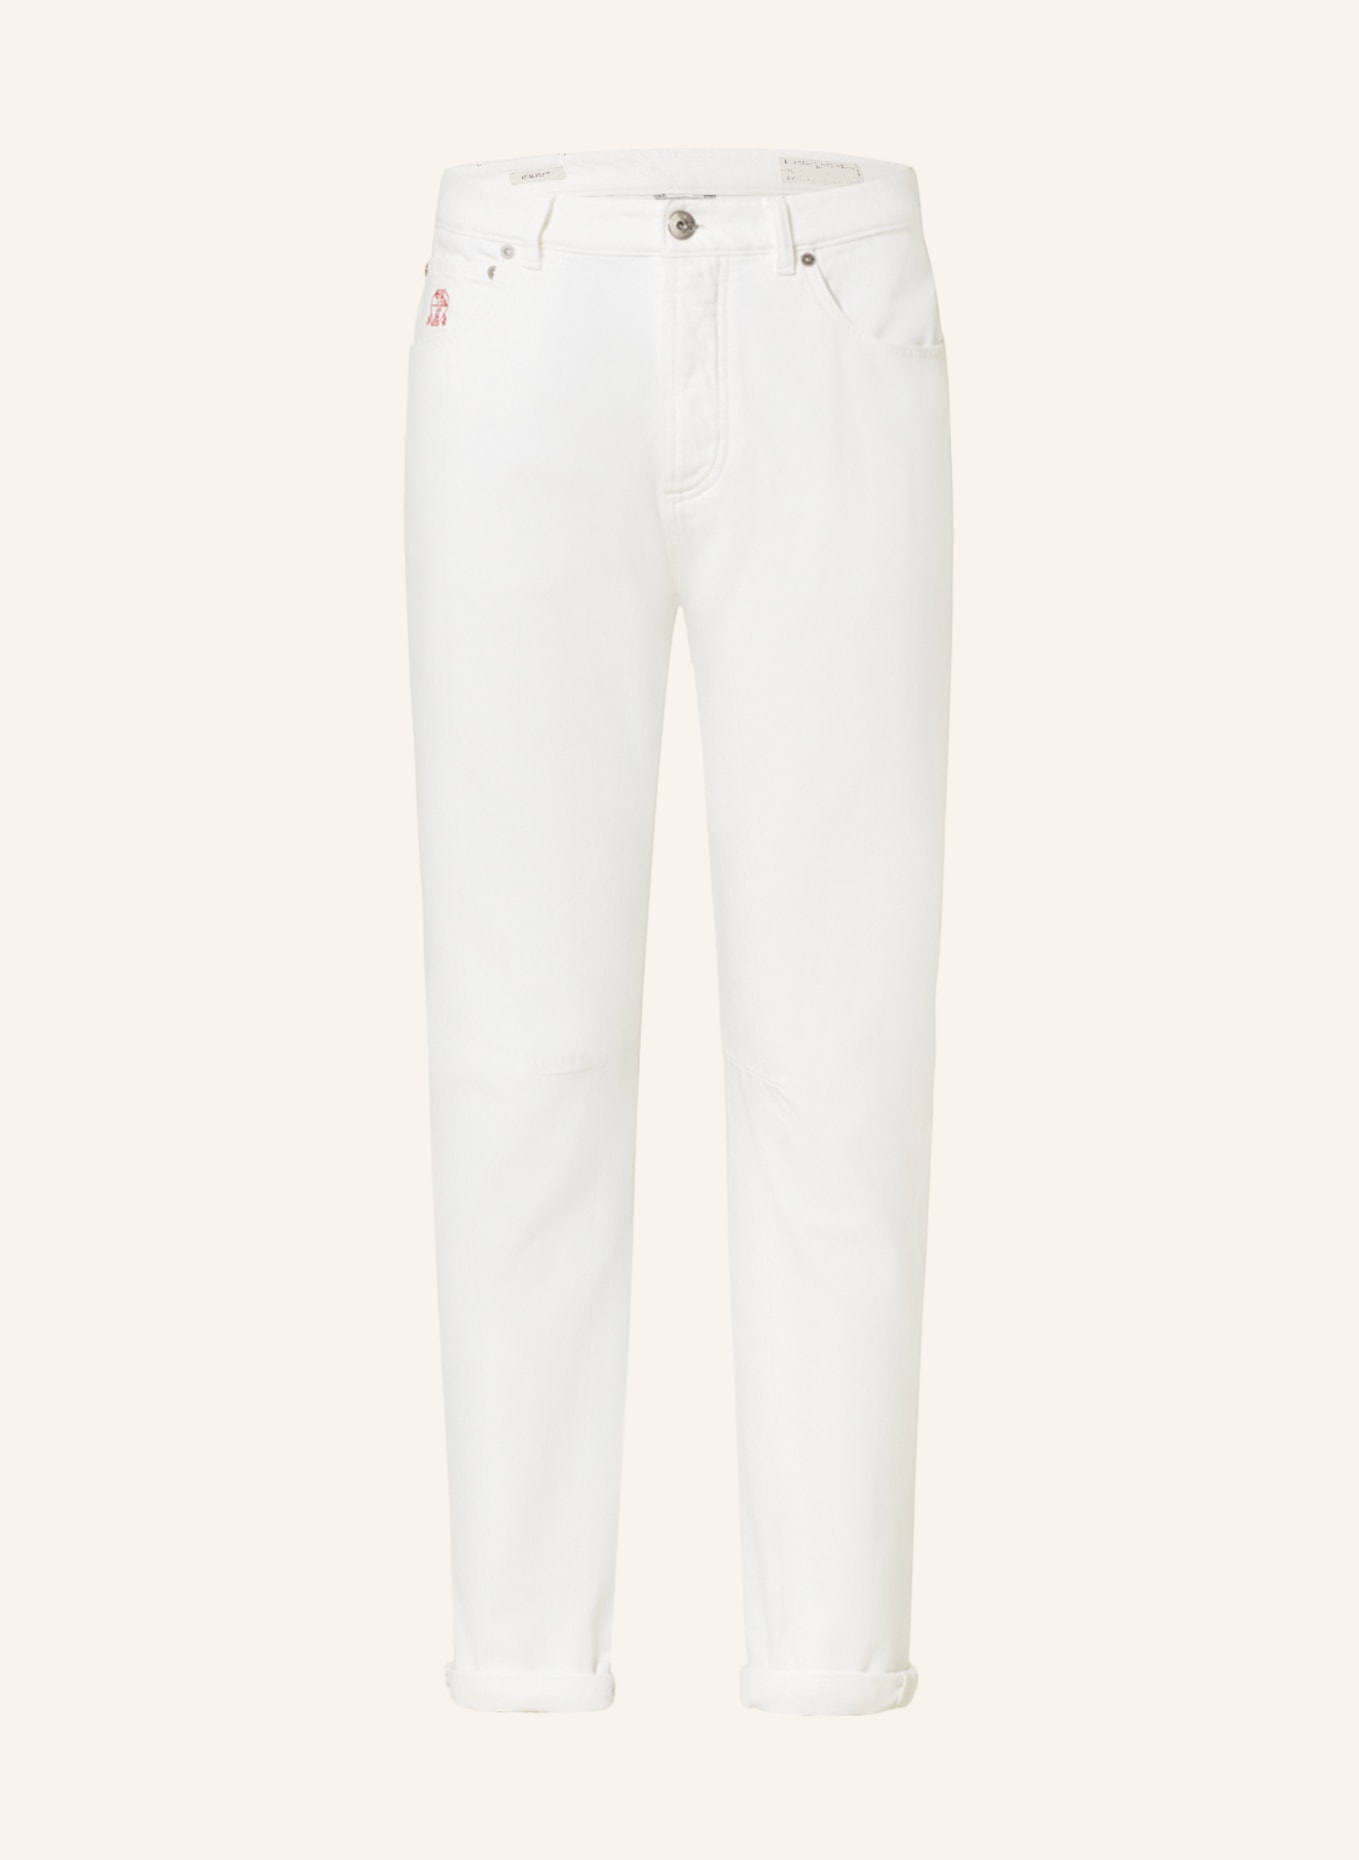 BRUNELLO CUCINELLI Jeans Leisure Fit, Farbe: C7210 white (Bild 1)